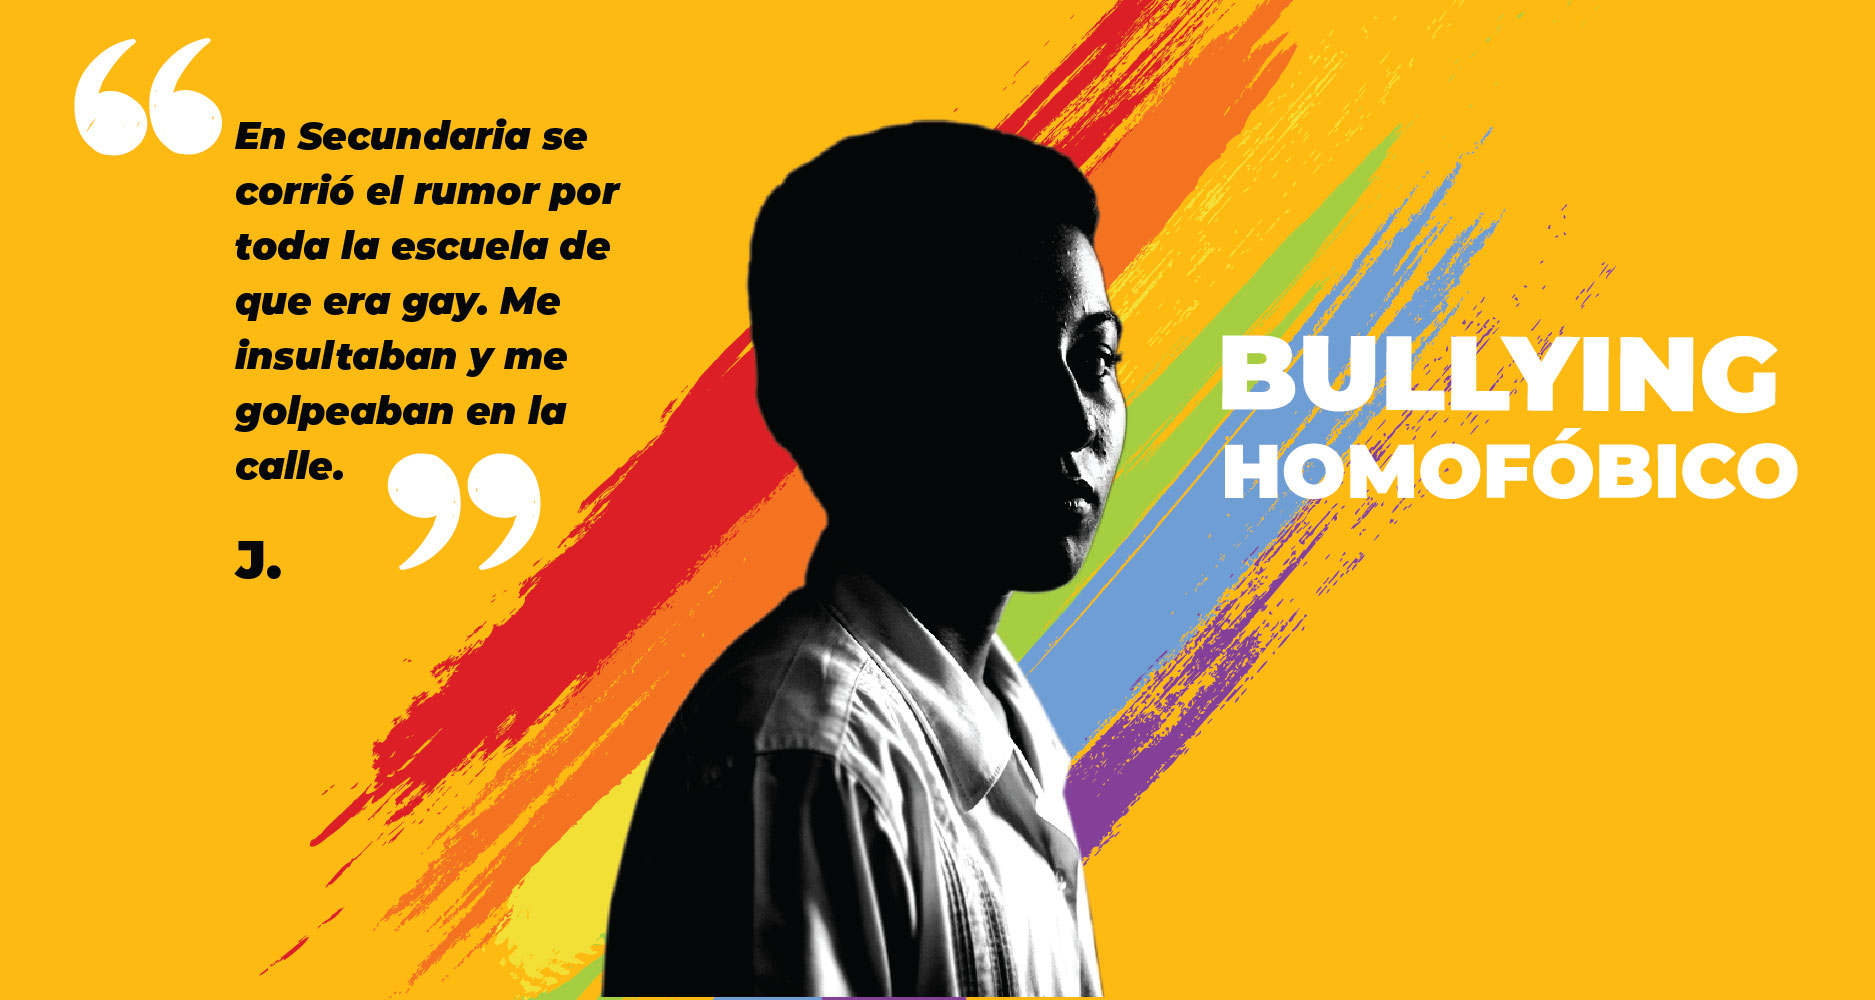 Imagen de un adolescente con testimonio de ser blanco de homofobia en su escuela.